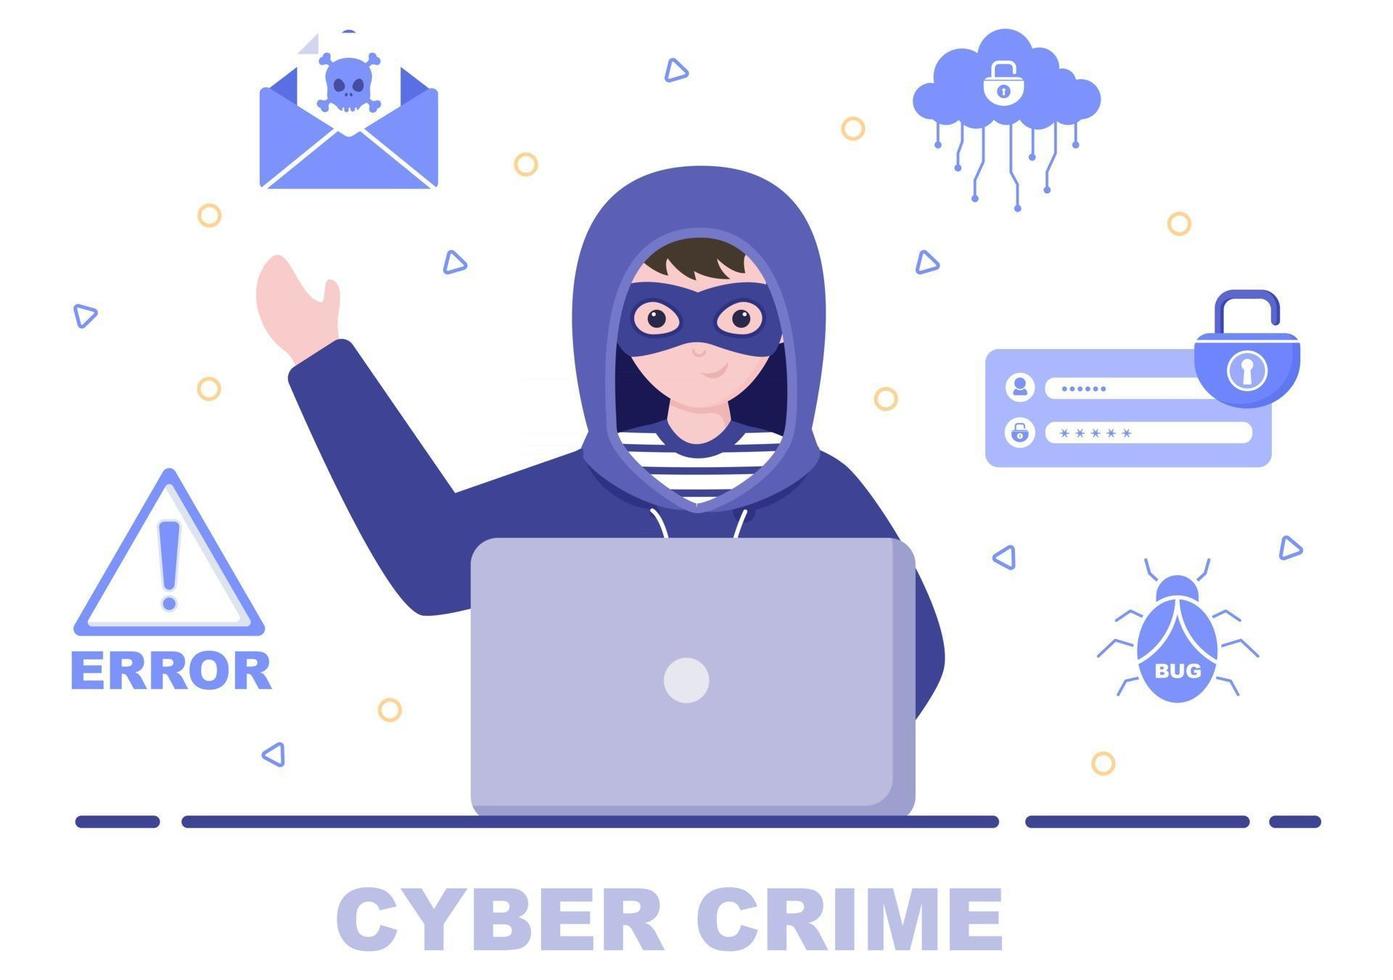 illustrazione del crimine informatico phishing che ruba dati digitali, sistema del dispositivo, password e documenti bancari dal computer vettore